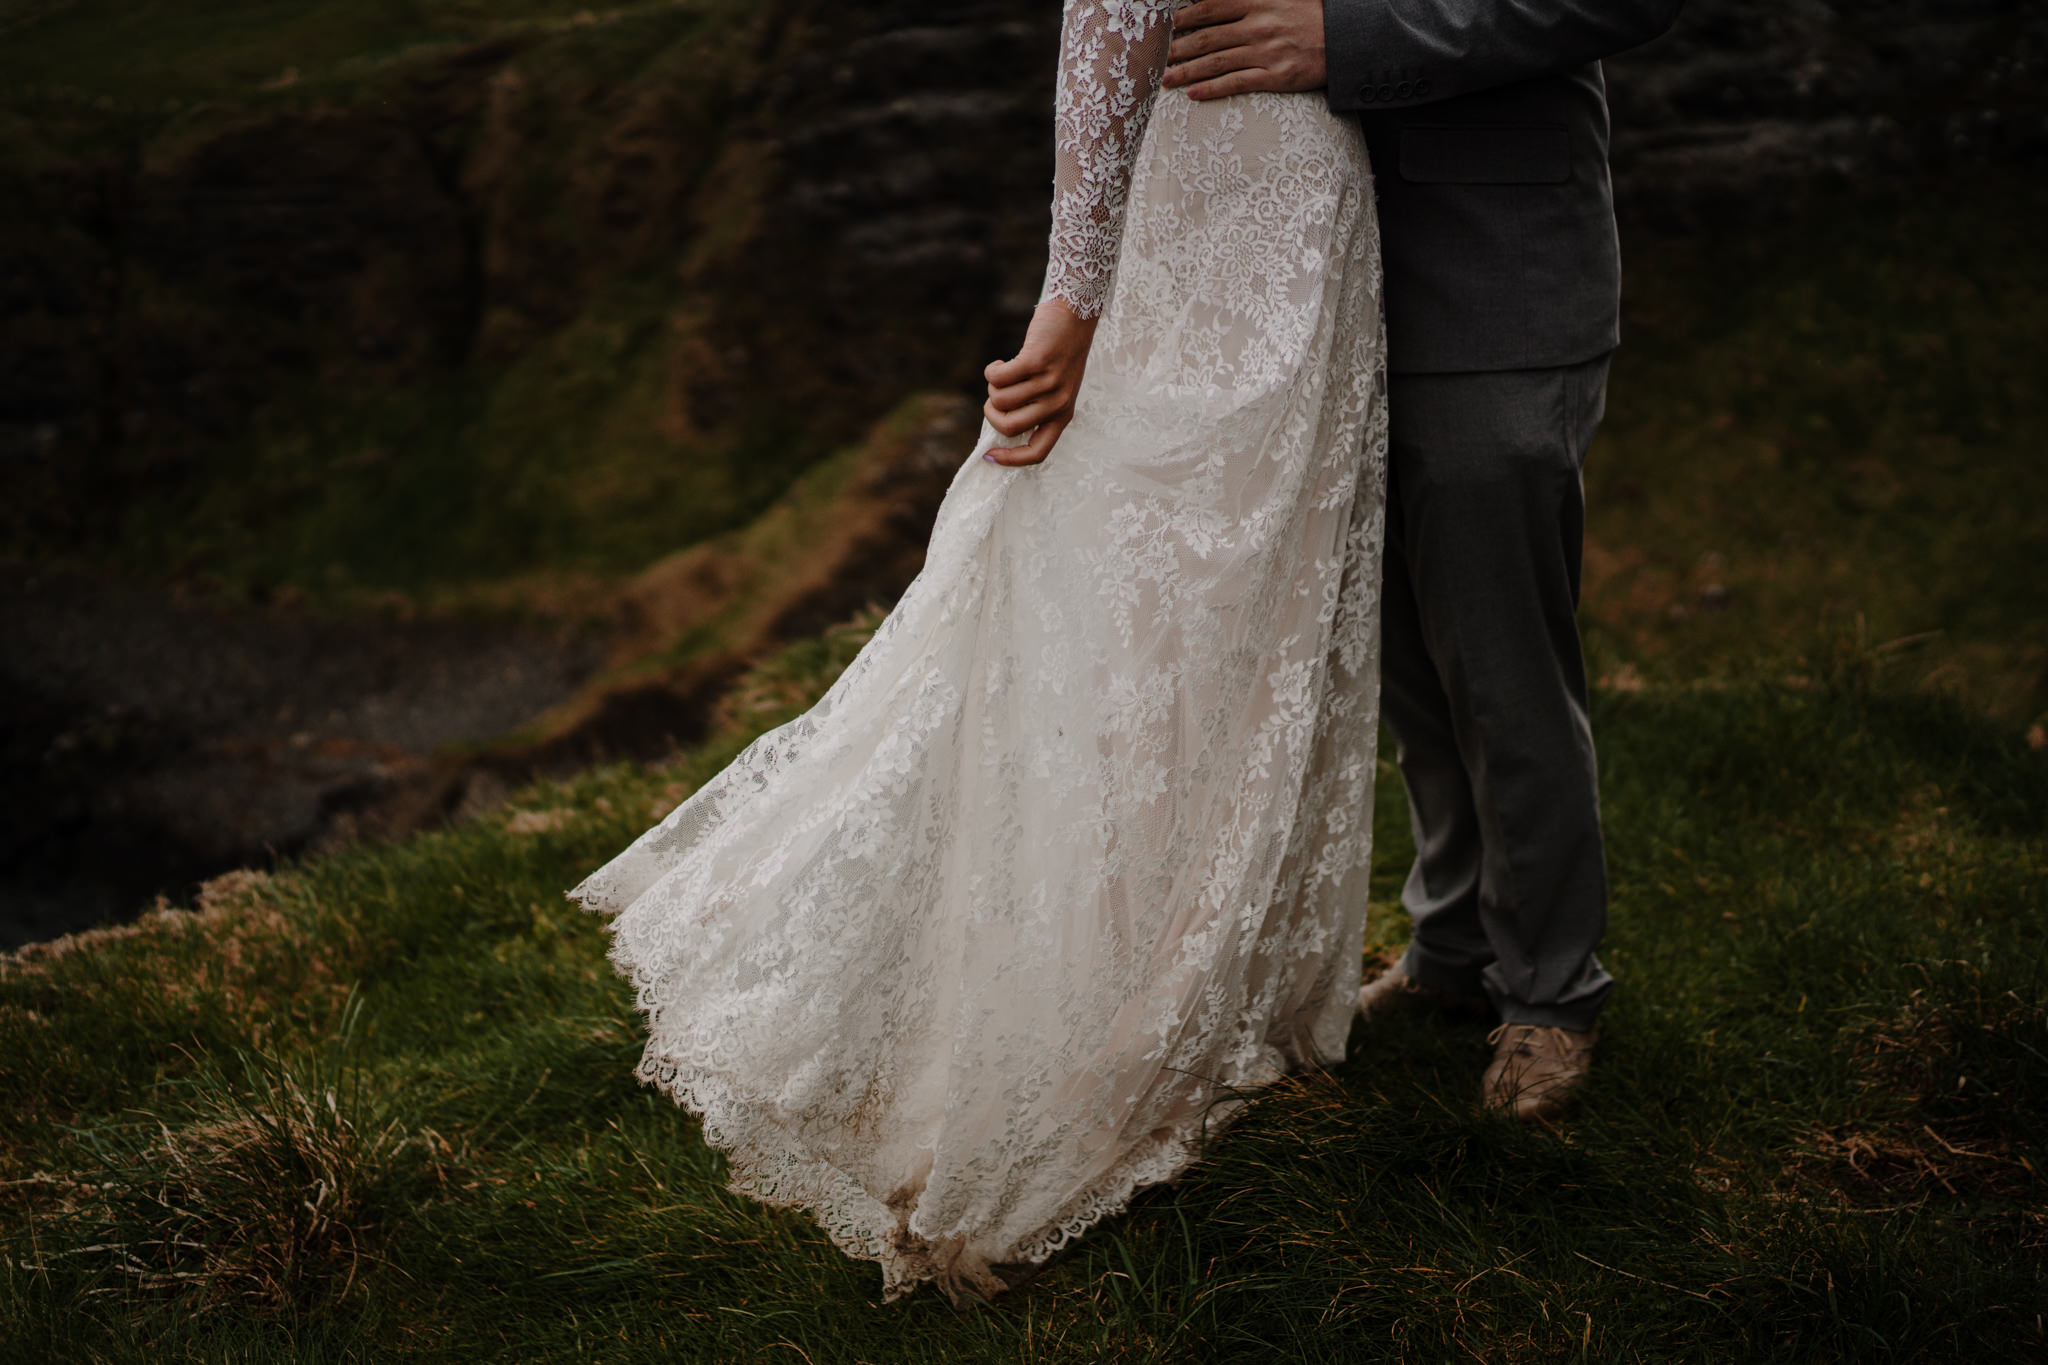 Vintage lace wedding dress cliff edge dunluce castle elopement